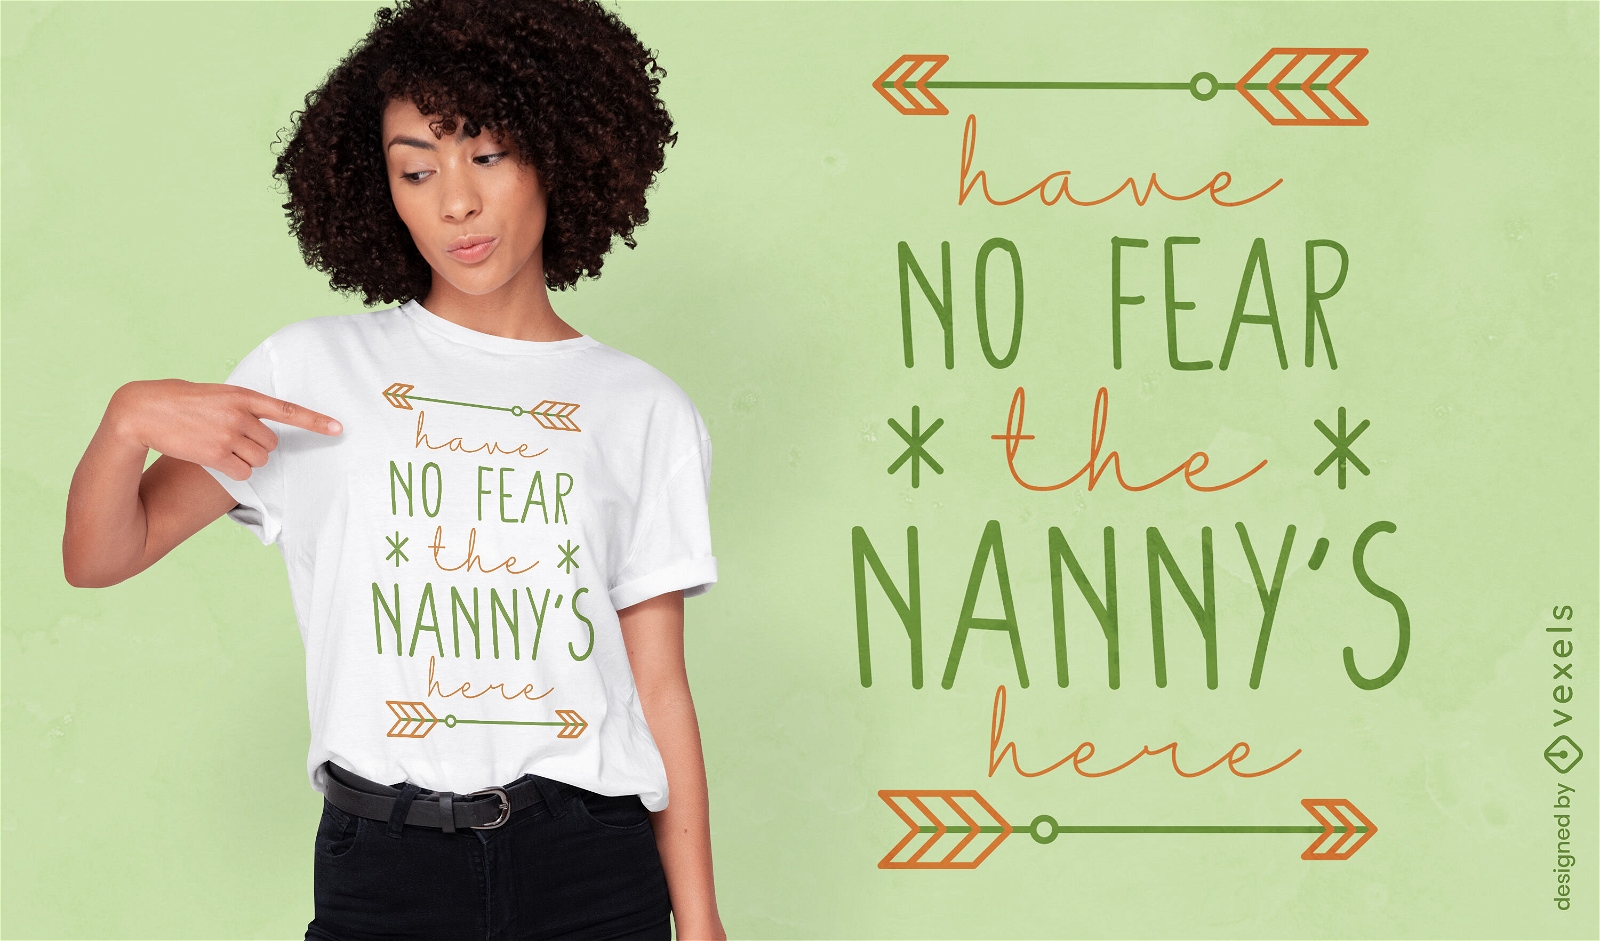 Nanny's arrival announcement t-shirt design